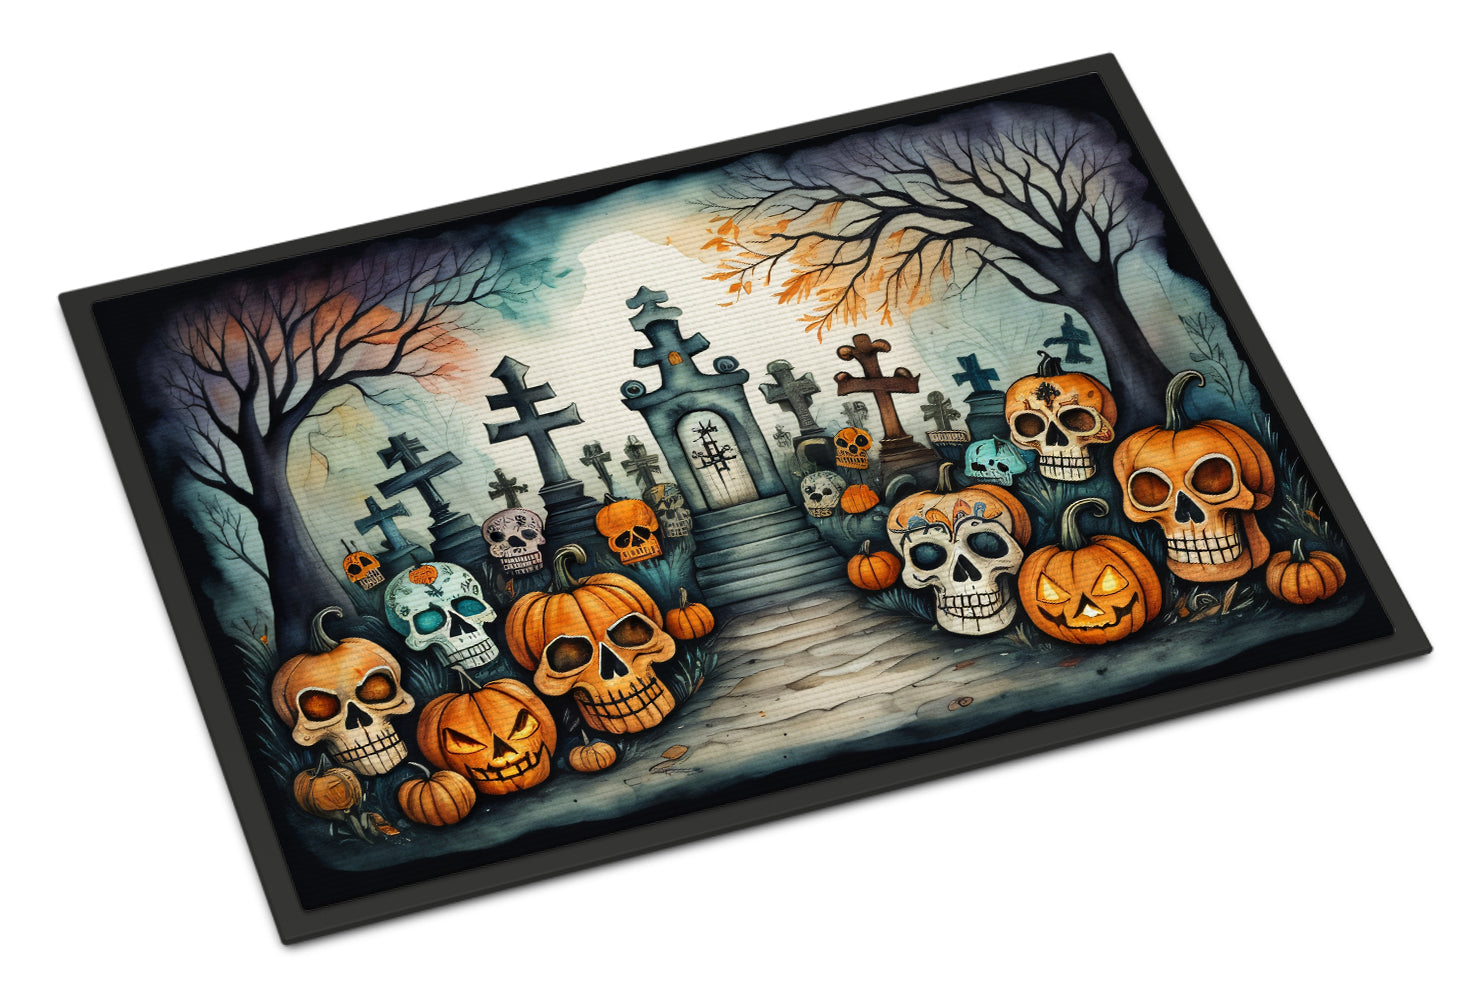 Buy this Calaveras Sugar Skulls Spooky Halloween Doormat 18x27